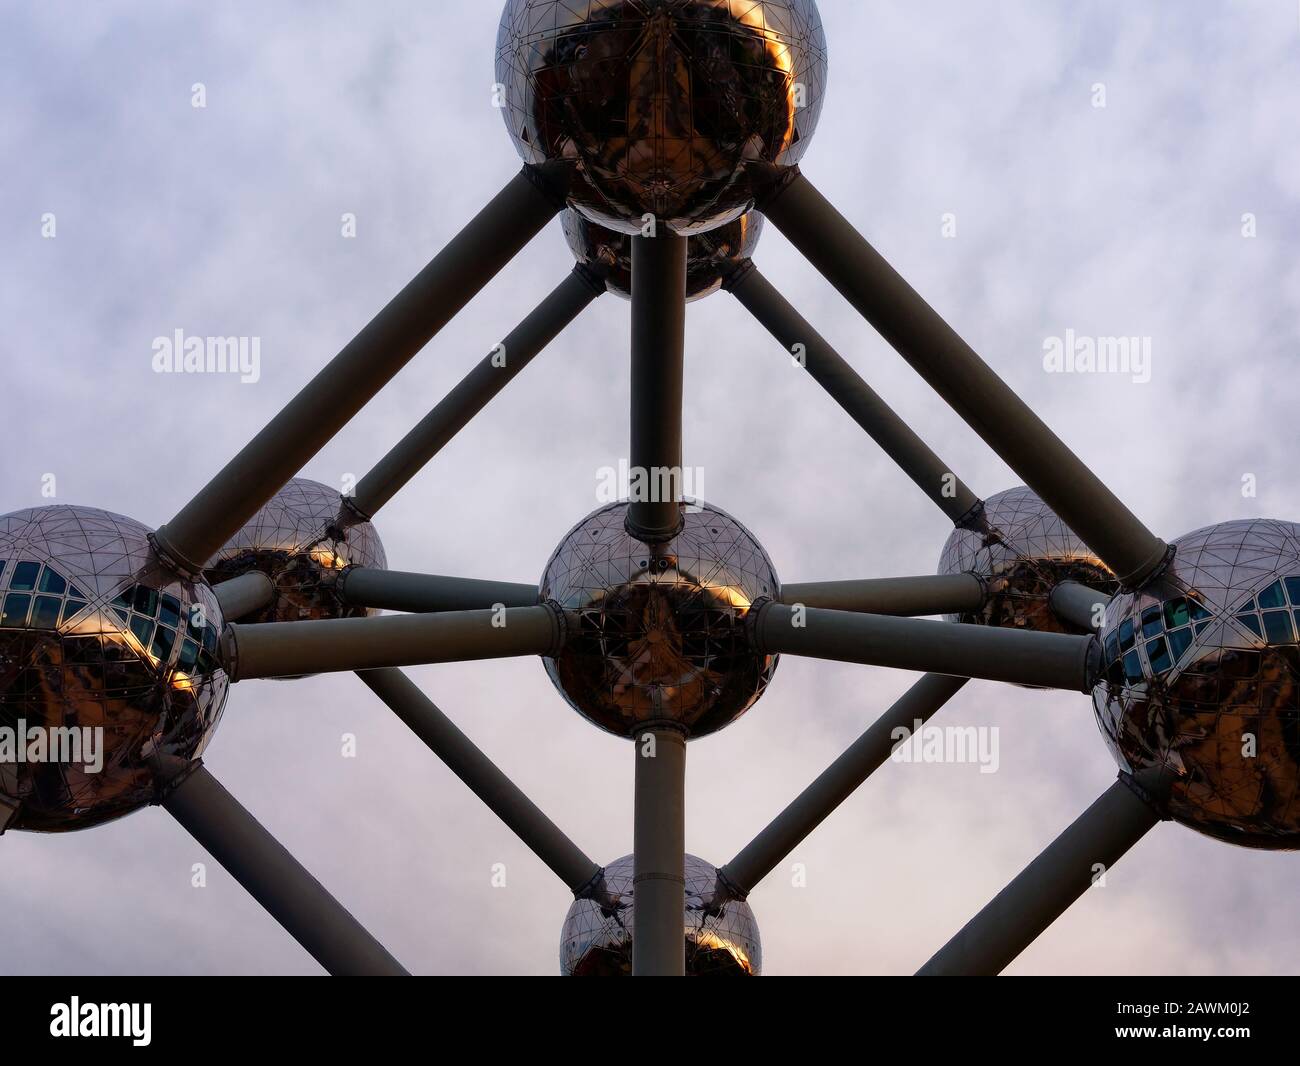 Brüssel, Belgien - November 2019: Atomium Eisen Atom Modell in Brüssel Belgien Panorama Stockfoto